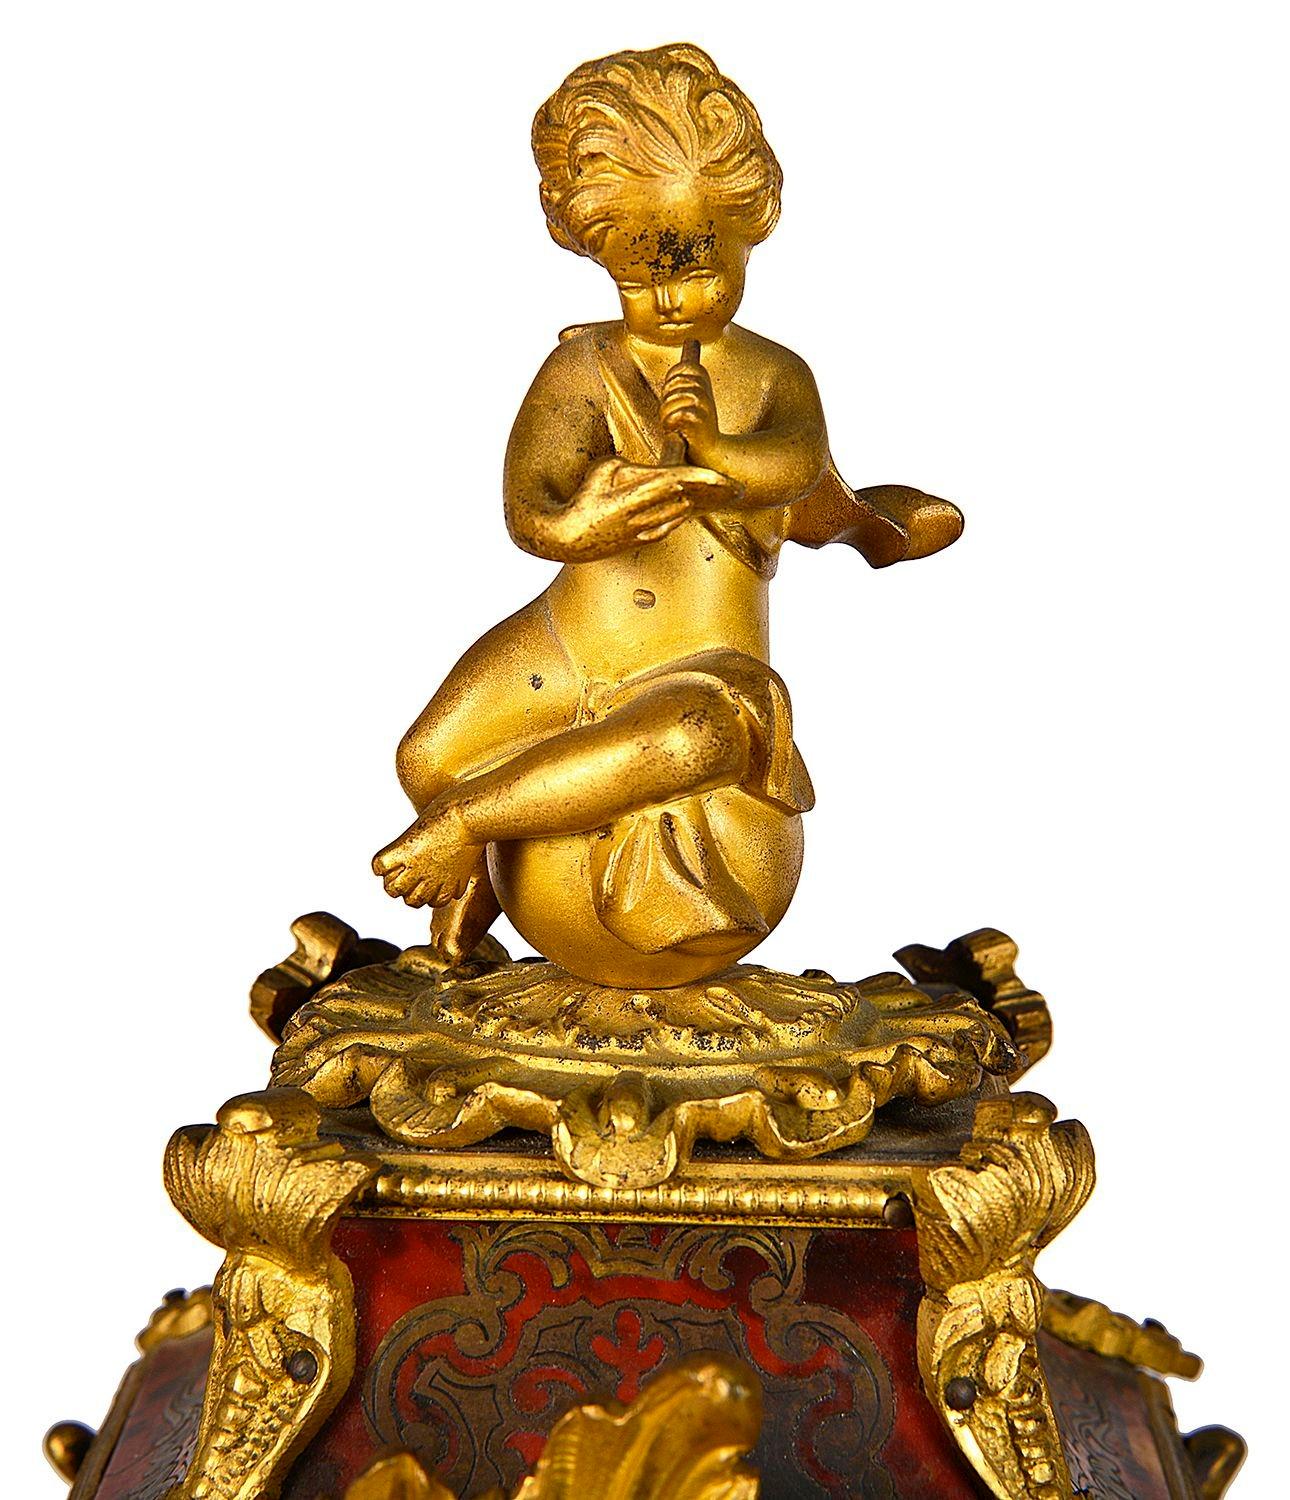 Eine sehr gute Qualität Französisch 19. Jahrhundert Boulle Mantel Uhr, mit einem vergoldeten Ormolu Putti sitzt auf der Oberseite, Red Schildpatt und Messing-Intarsien, um die serpentinenförmigen Gehäuse, wunderbare vergoldete Rokoko-Stil Ormolu